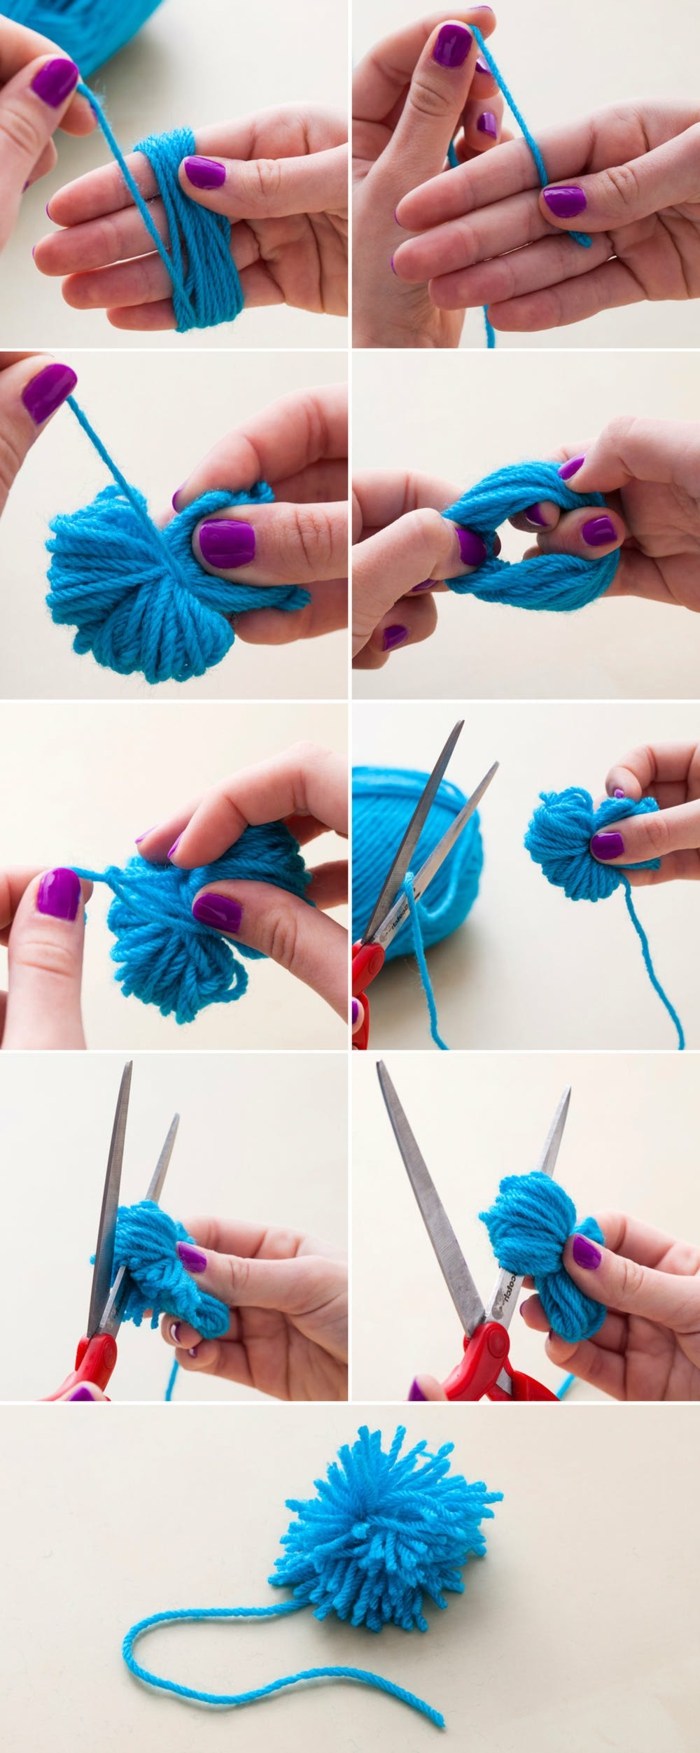 faire un pompon en laine, peloton de fil bleu enroulé autour des doigts, technique pour fabriquer des pompons